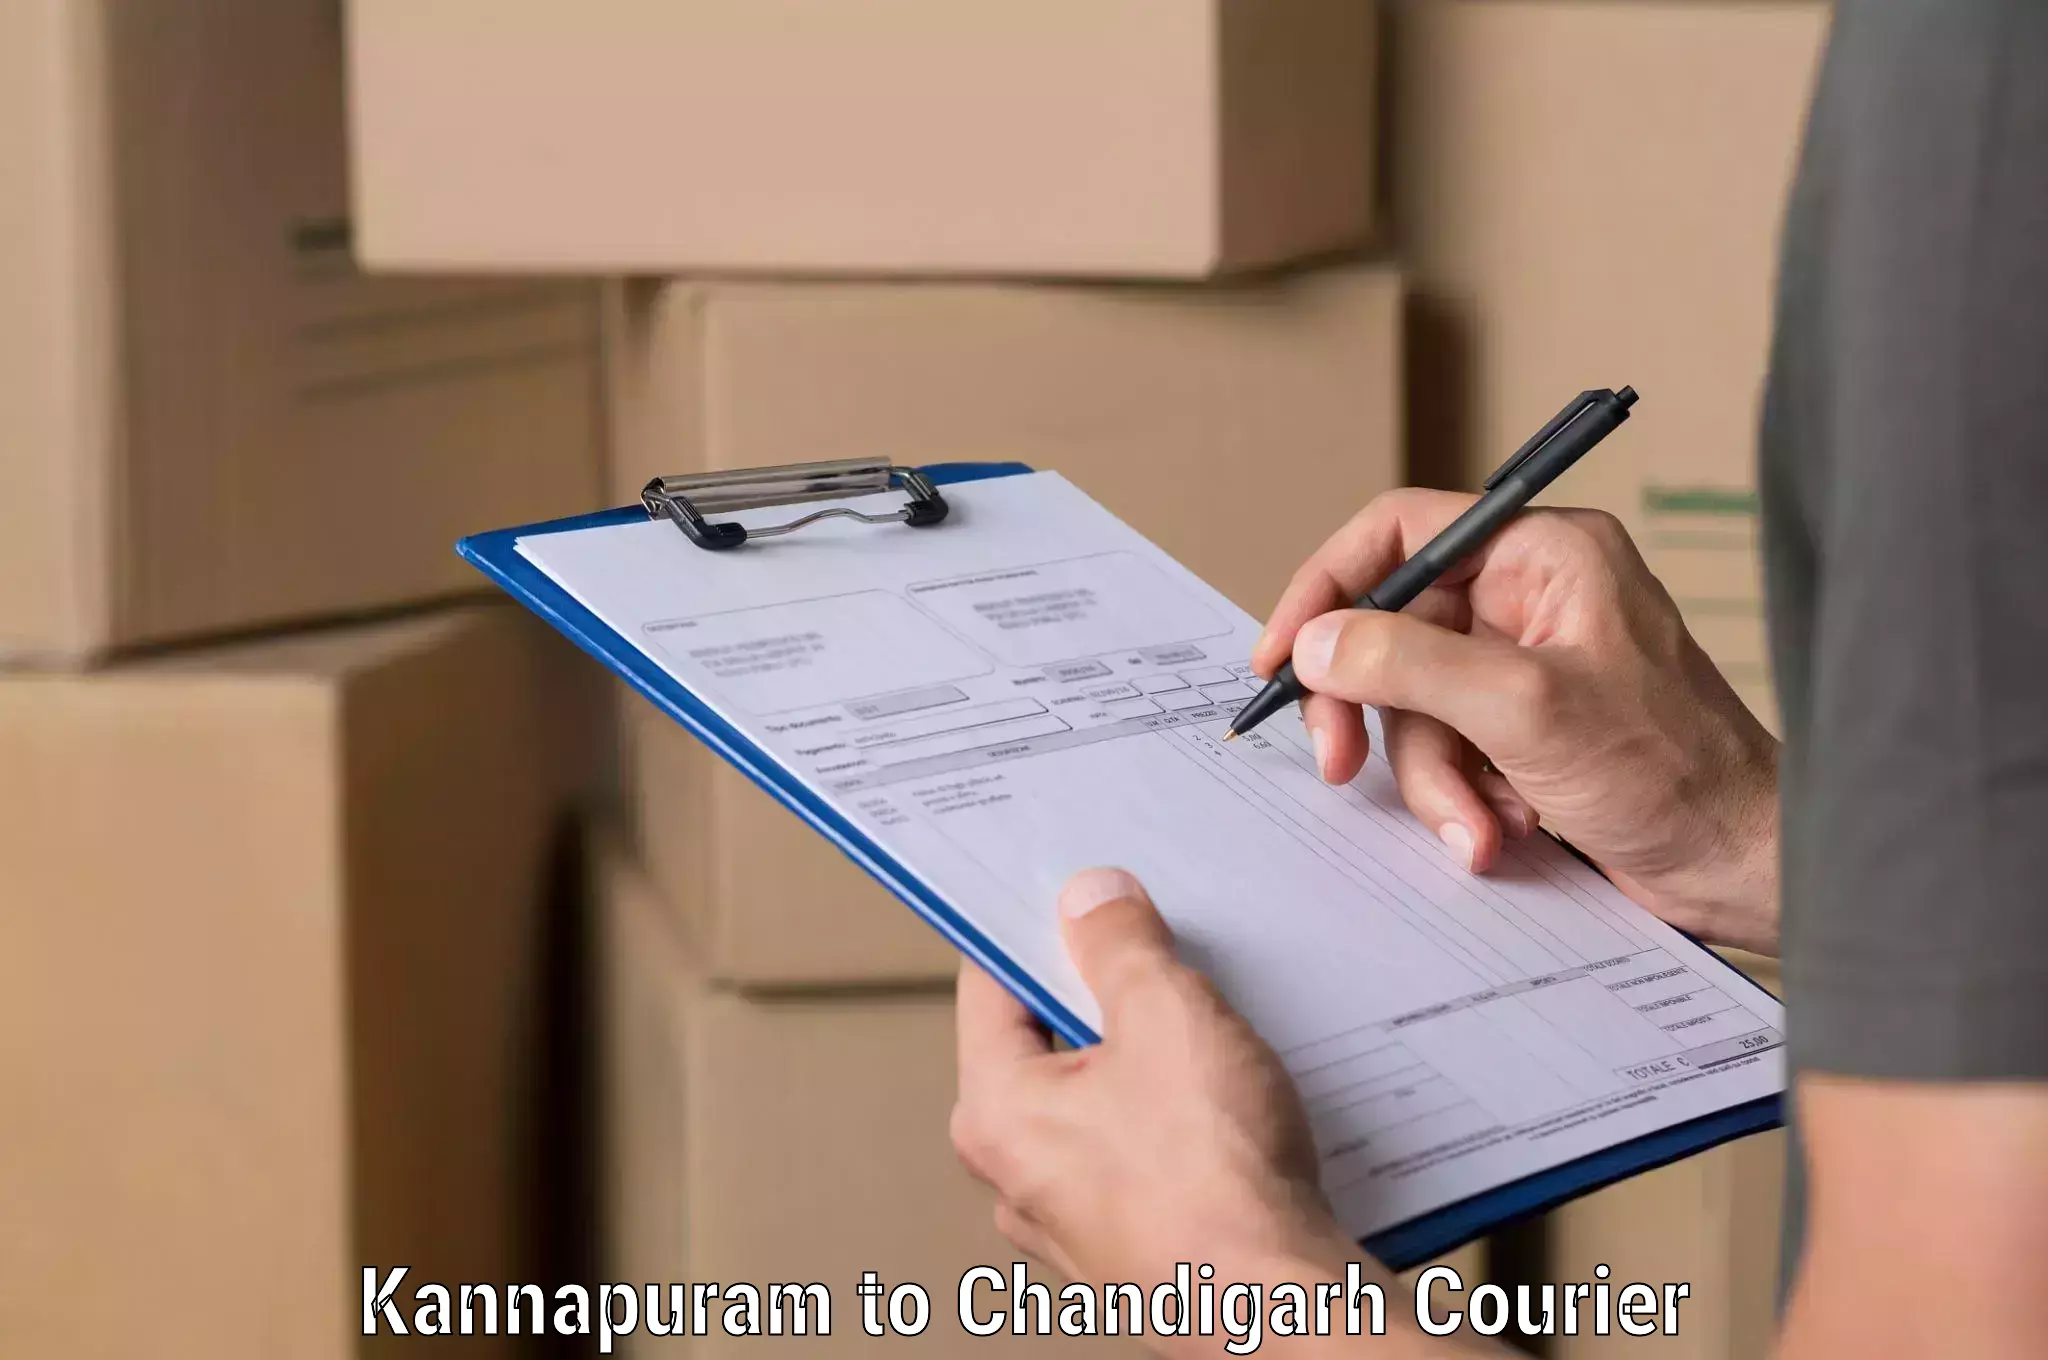 Speedy delivery service in Kannapuram to Chandigarh